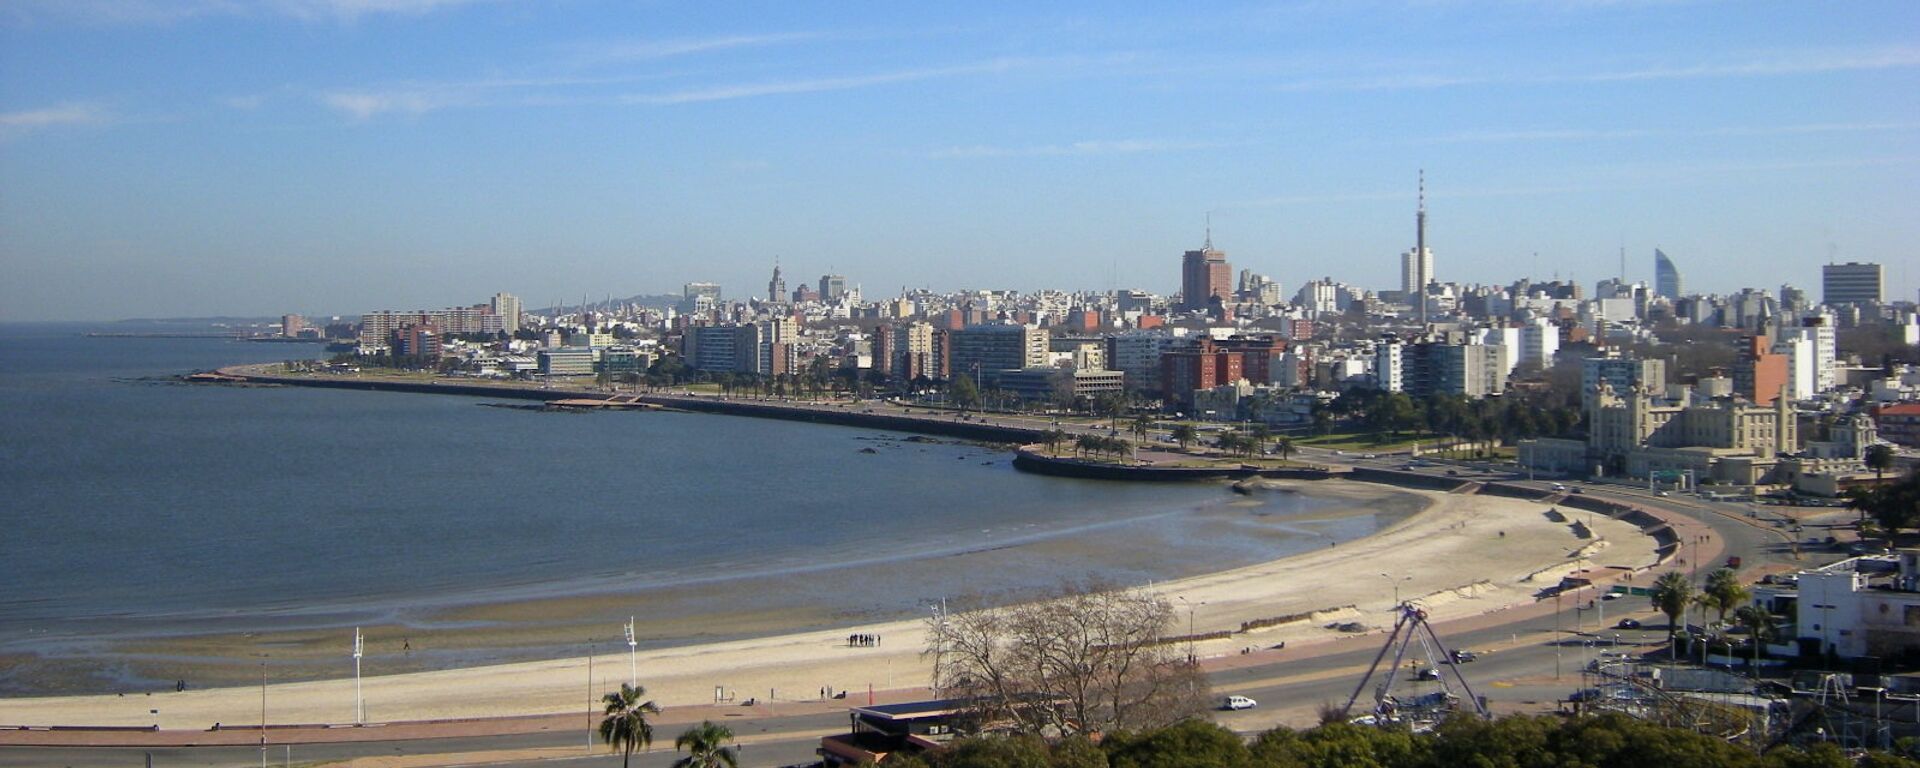 Montevideo, la capital de Uruguay - Sputnik Mundo, 1920, 18.05.2021